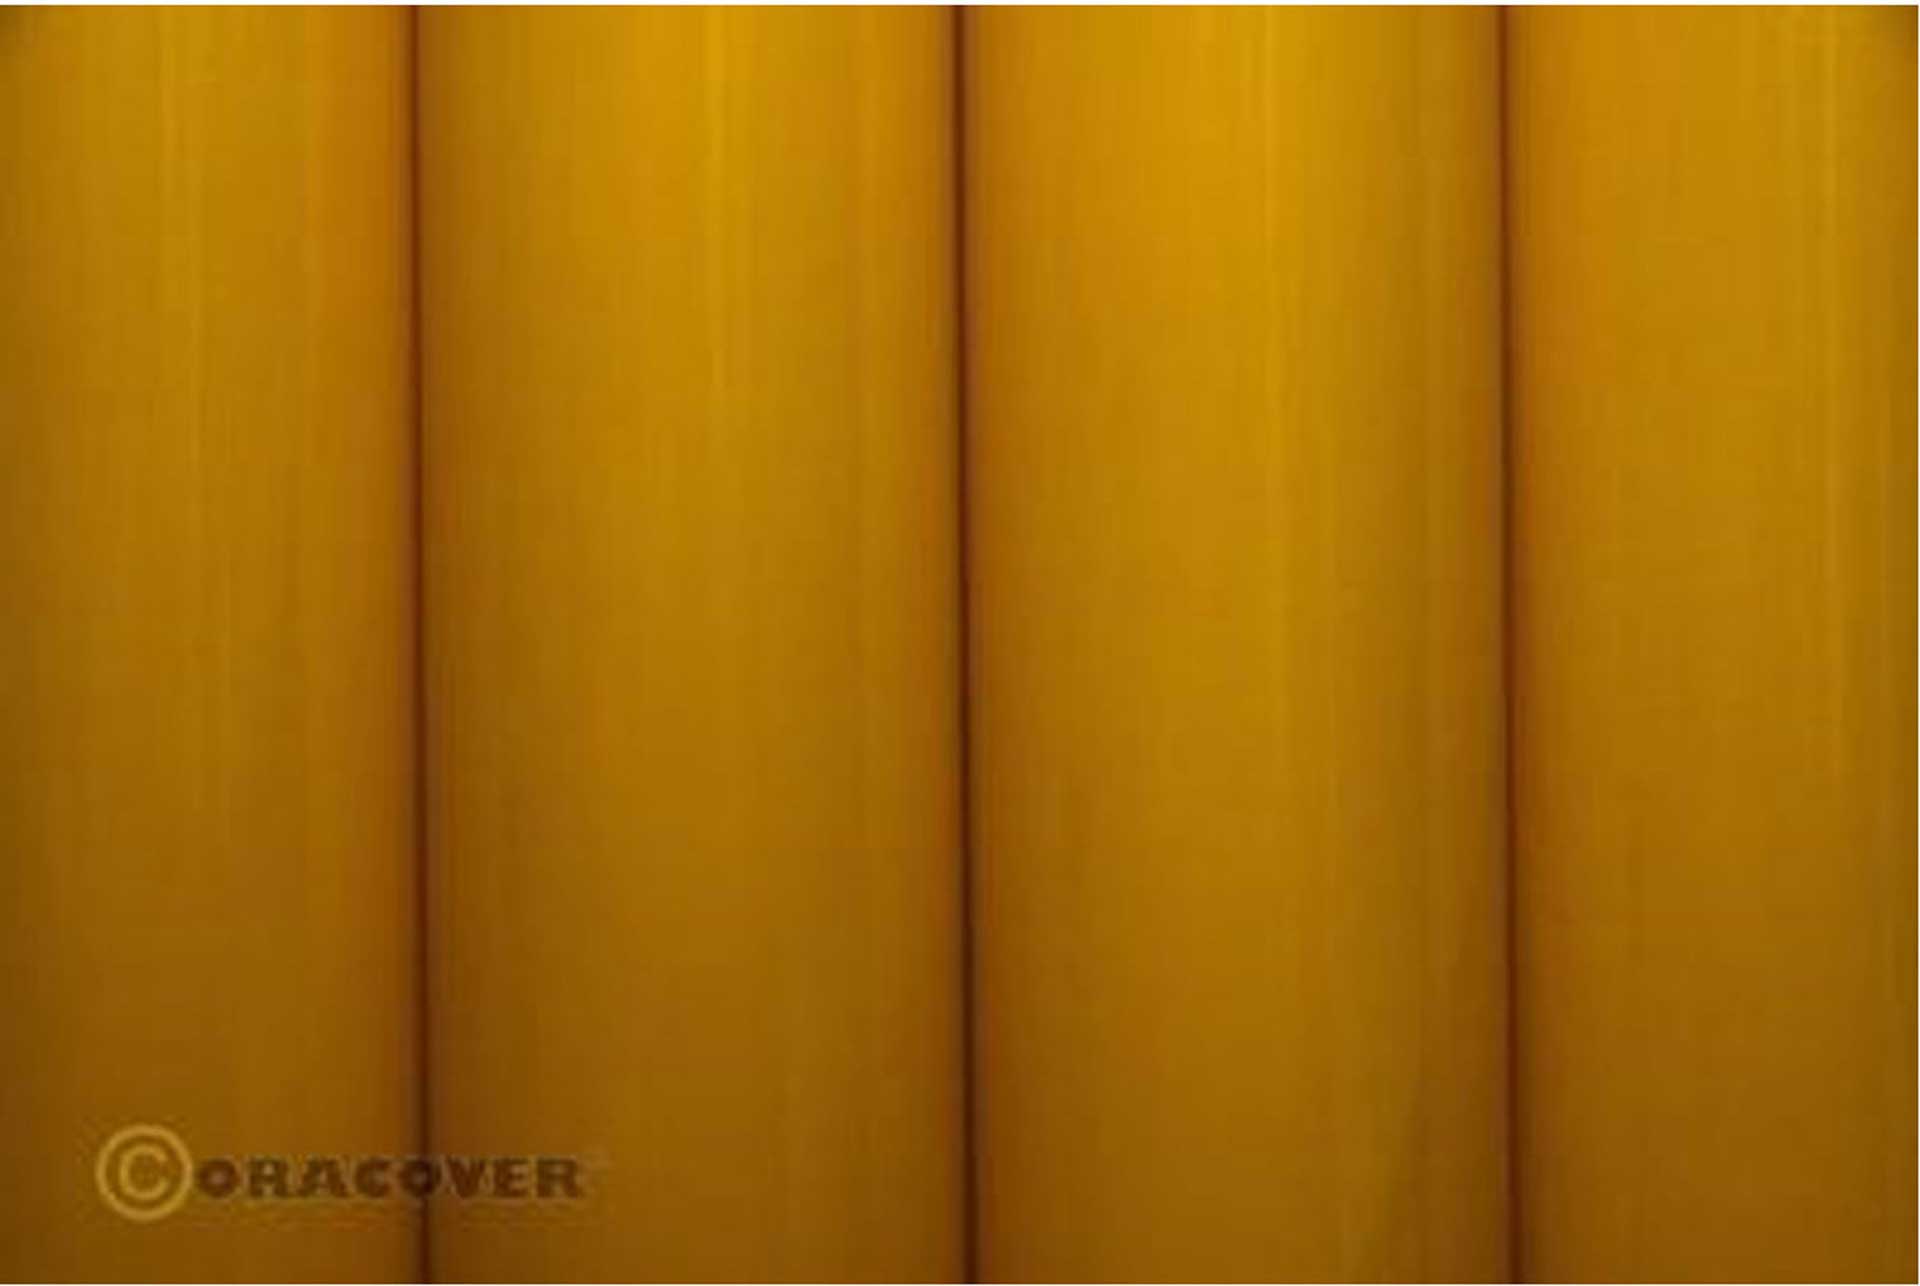 ORACOVER Bügelfolie scale Cub gelb 2 Meter # 30